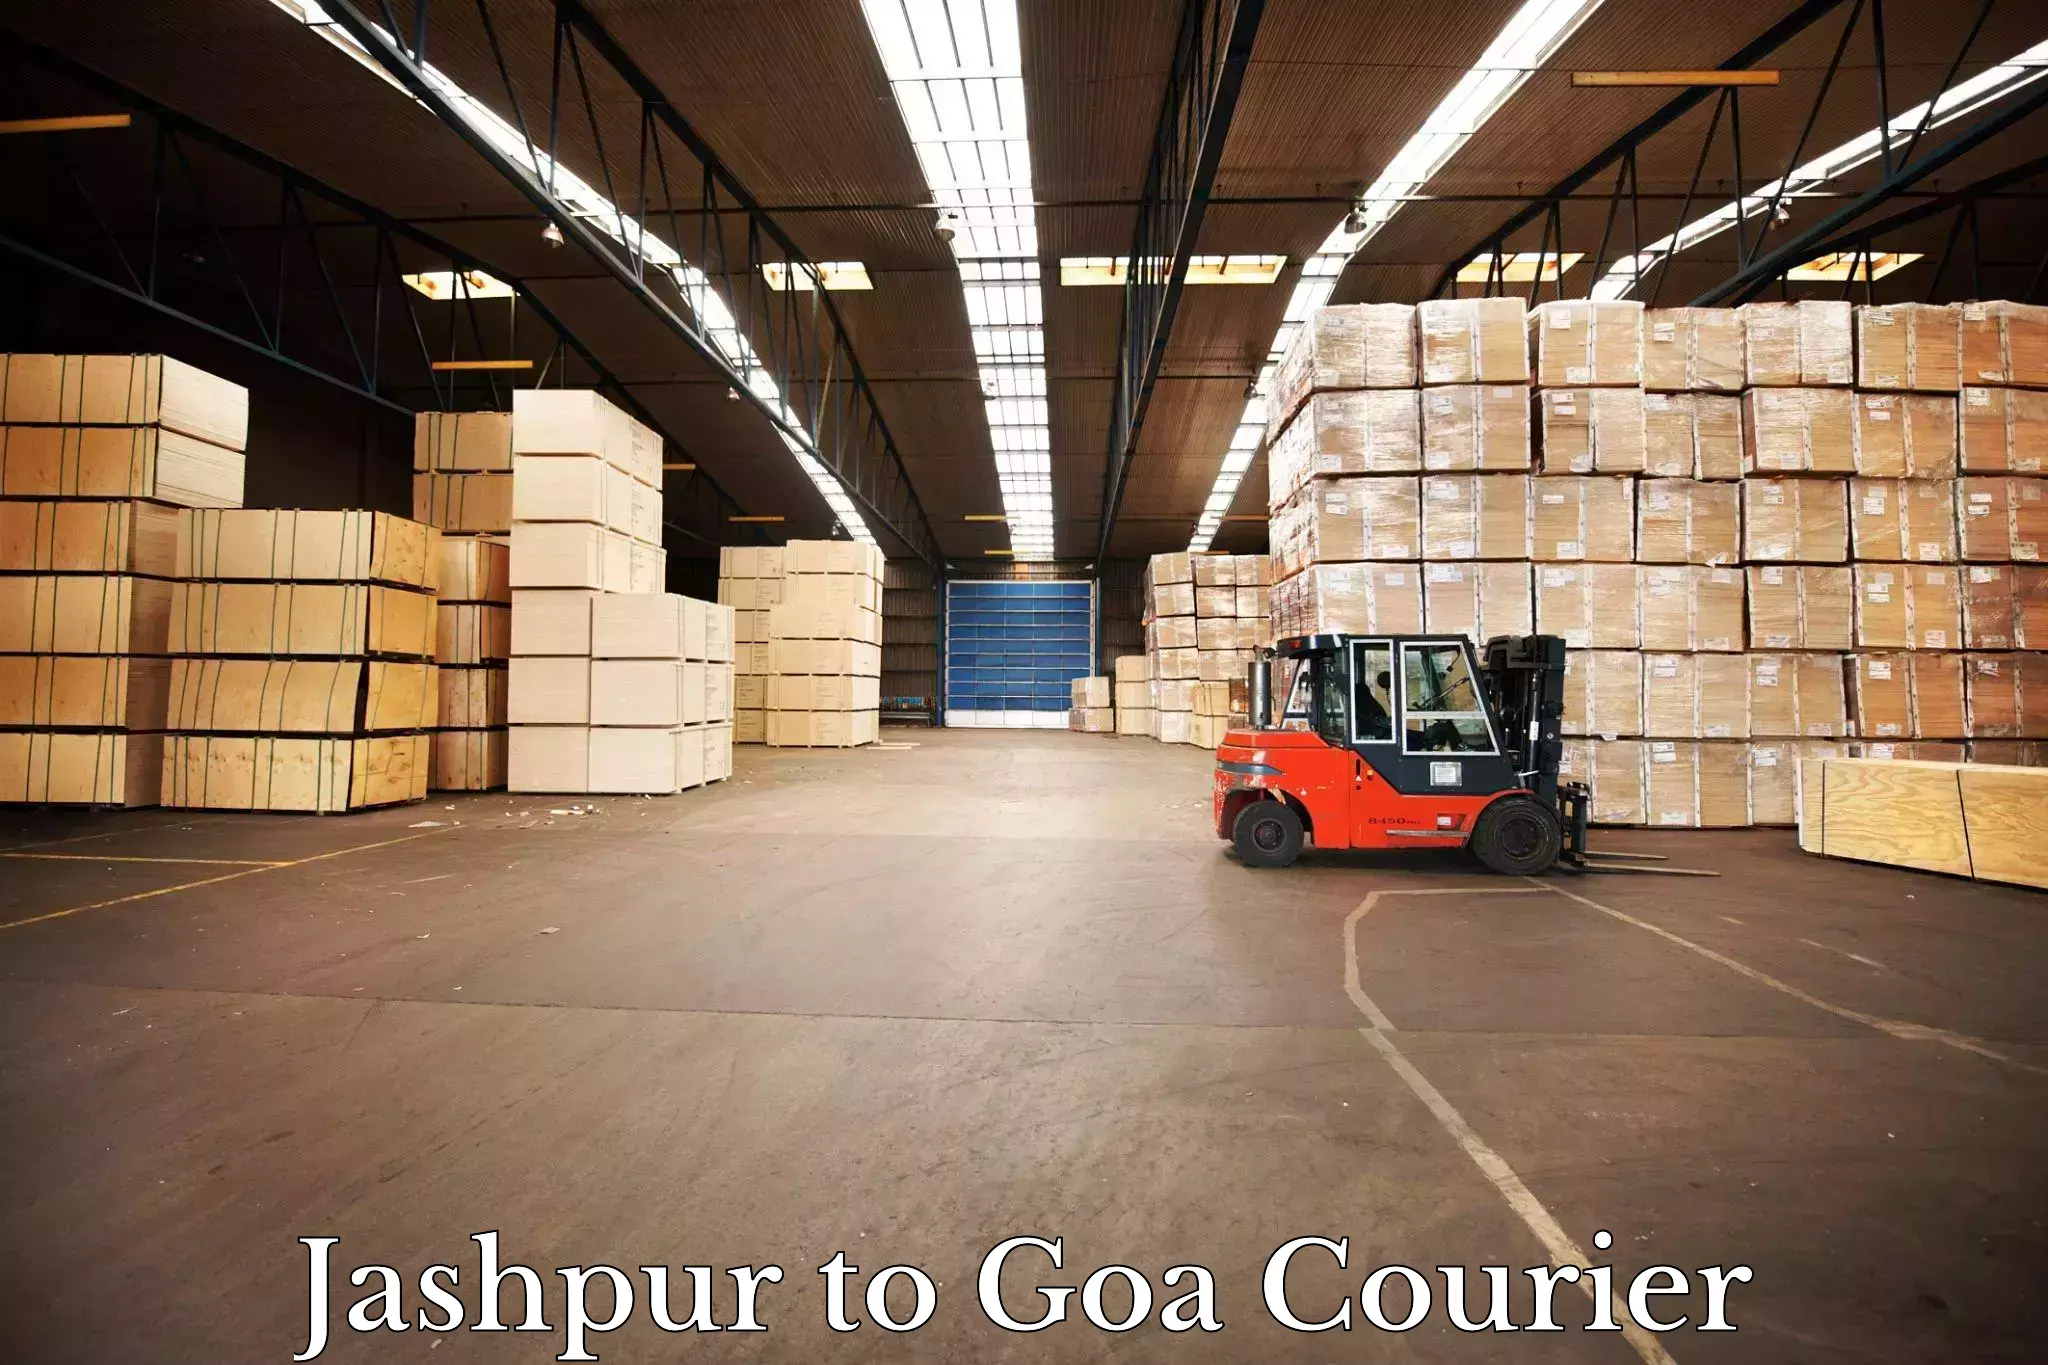 Weekend courier service Jashpur to Ponda